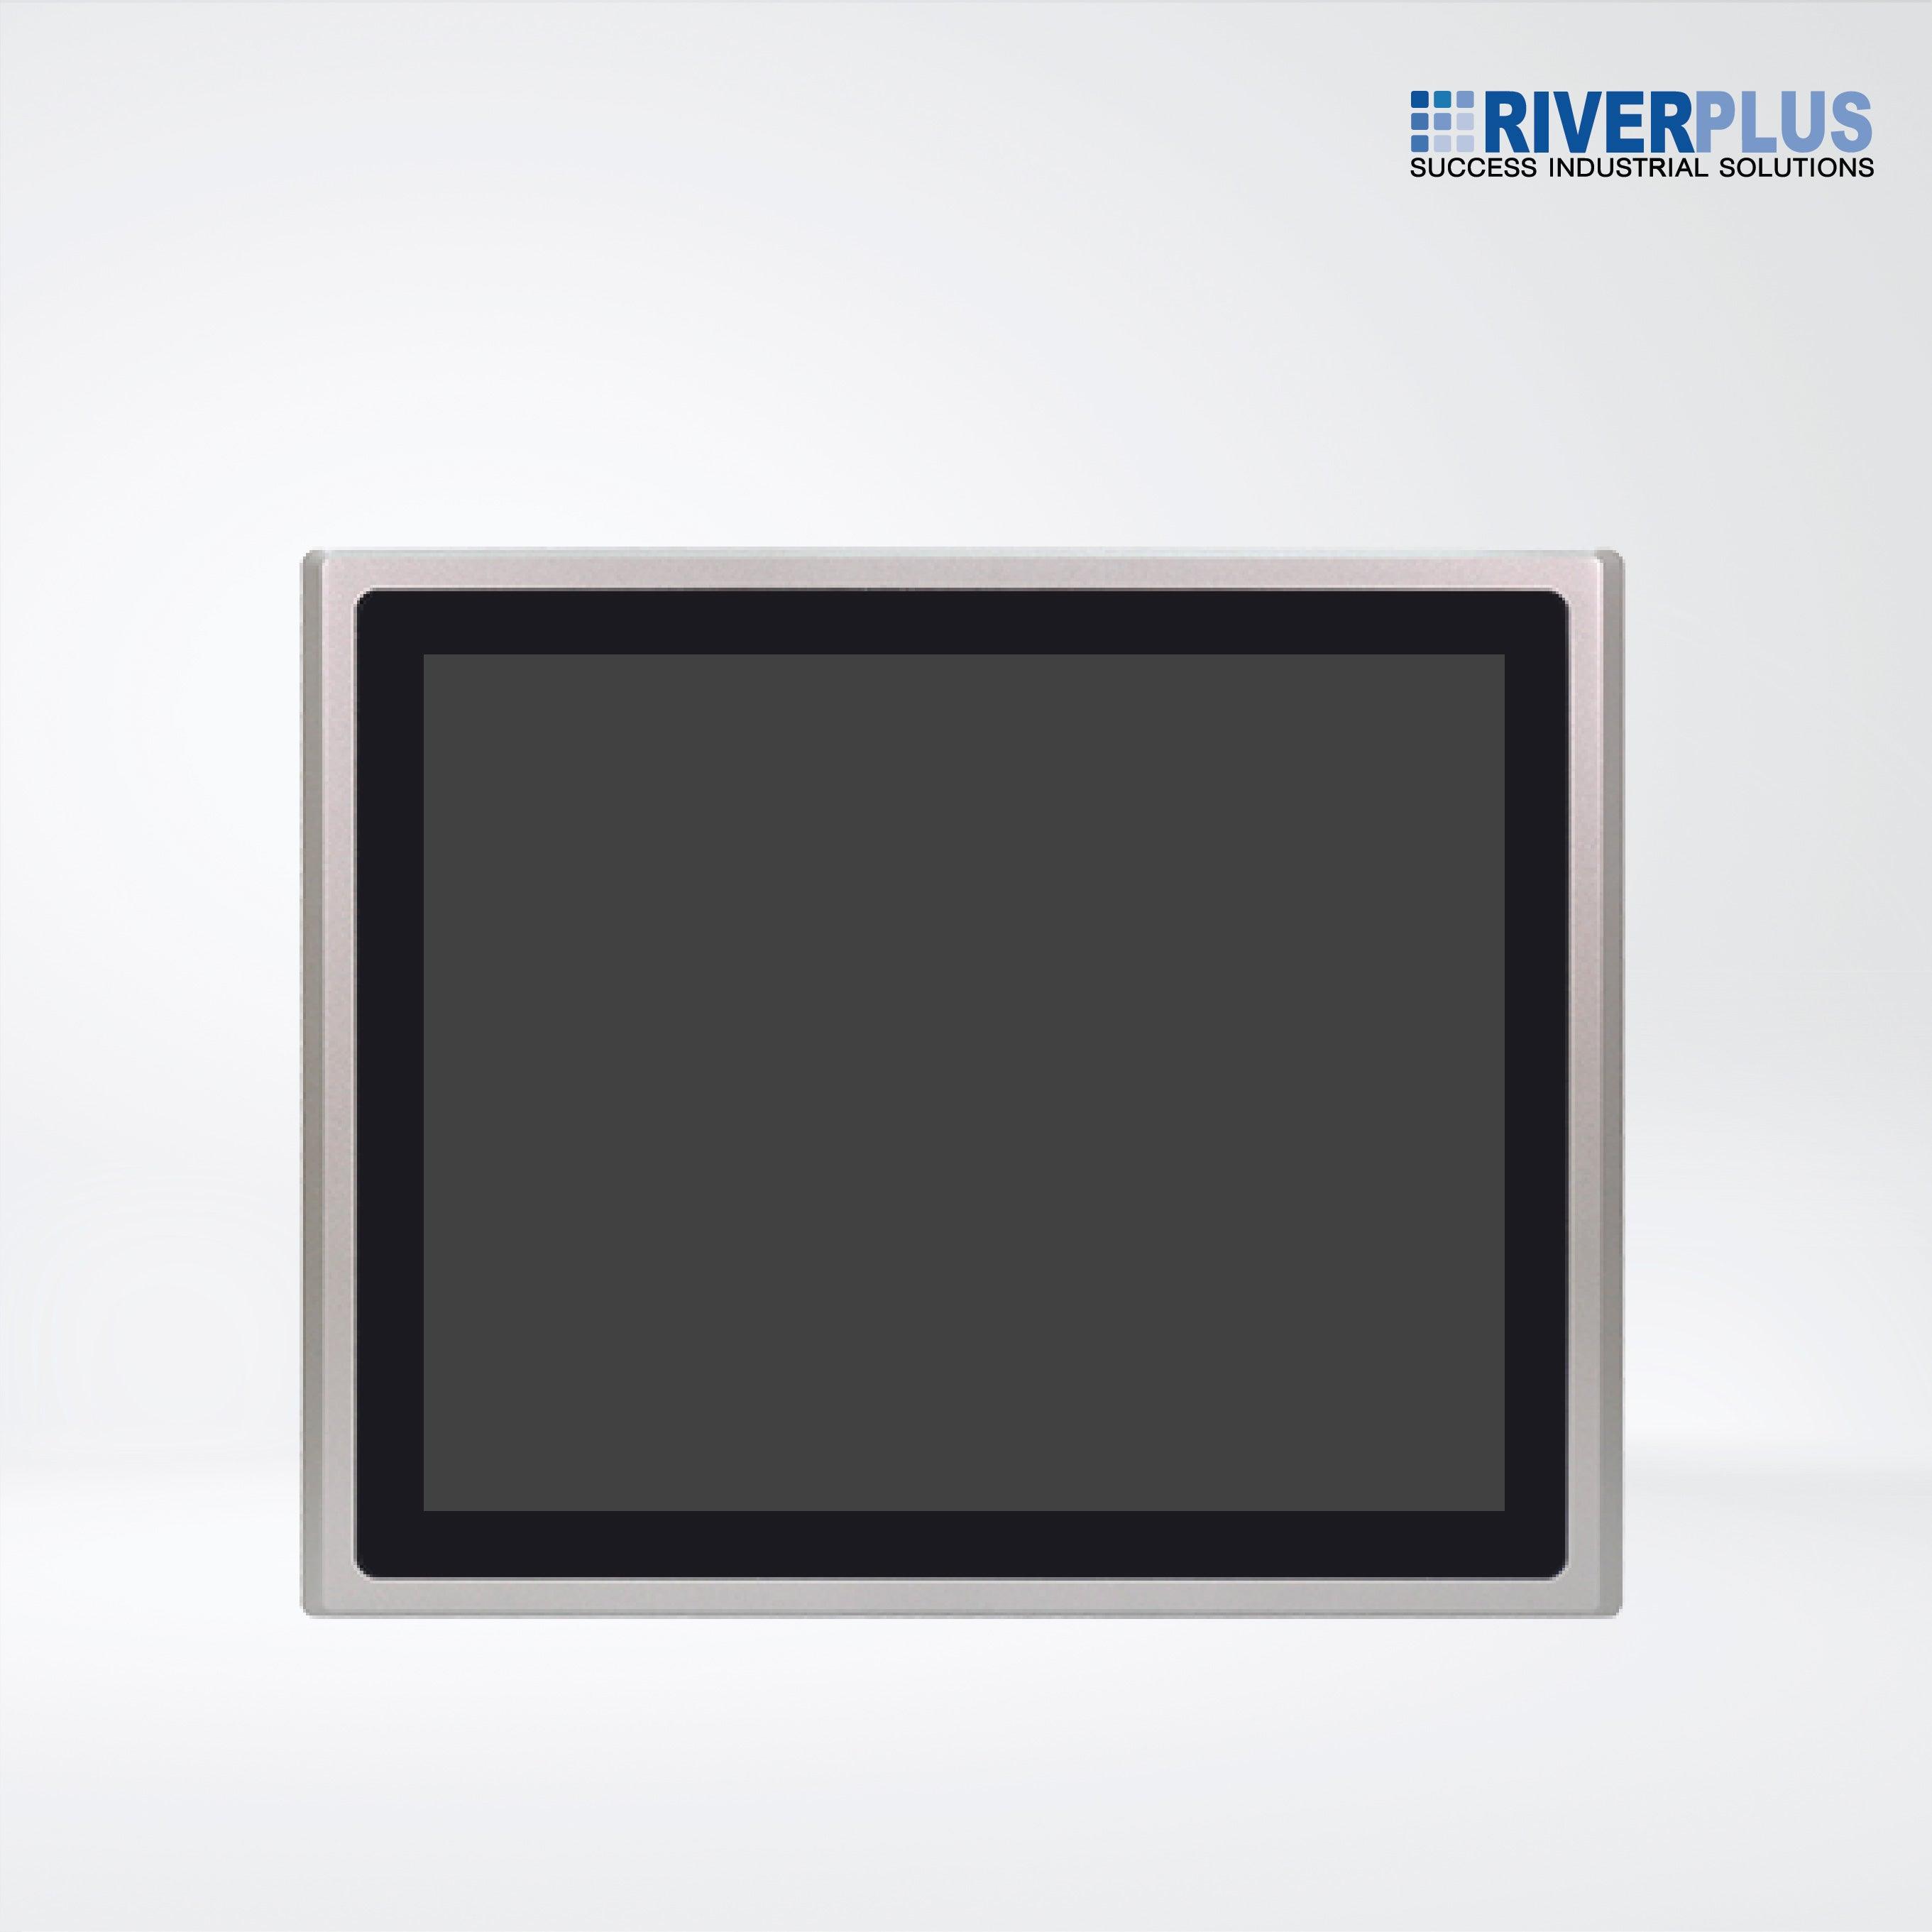 ARCHMI-819AP 19" Intel Apollo Lake N4200/N3350 Fanless Industrial Compact Size Panel PC - Riverplus